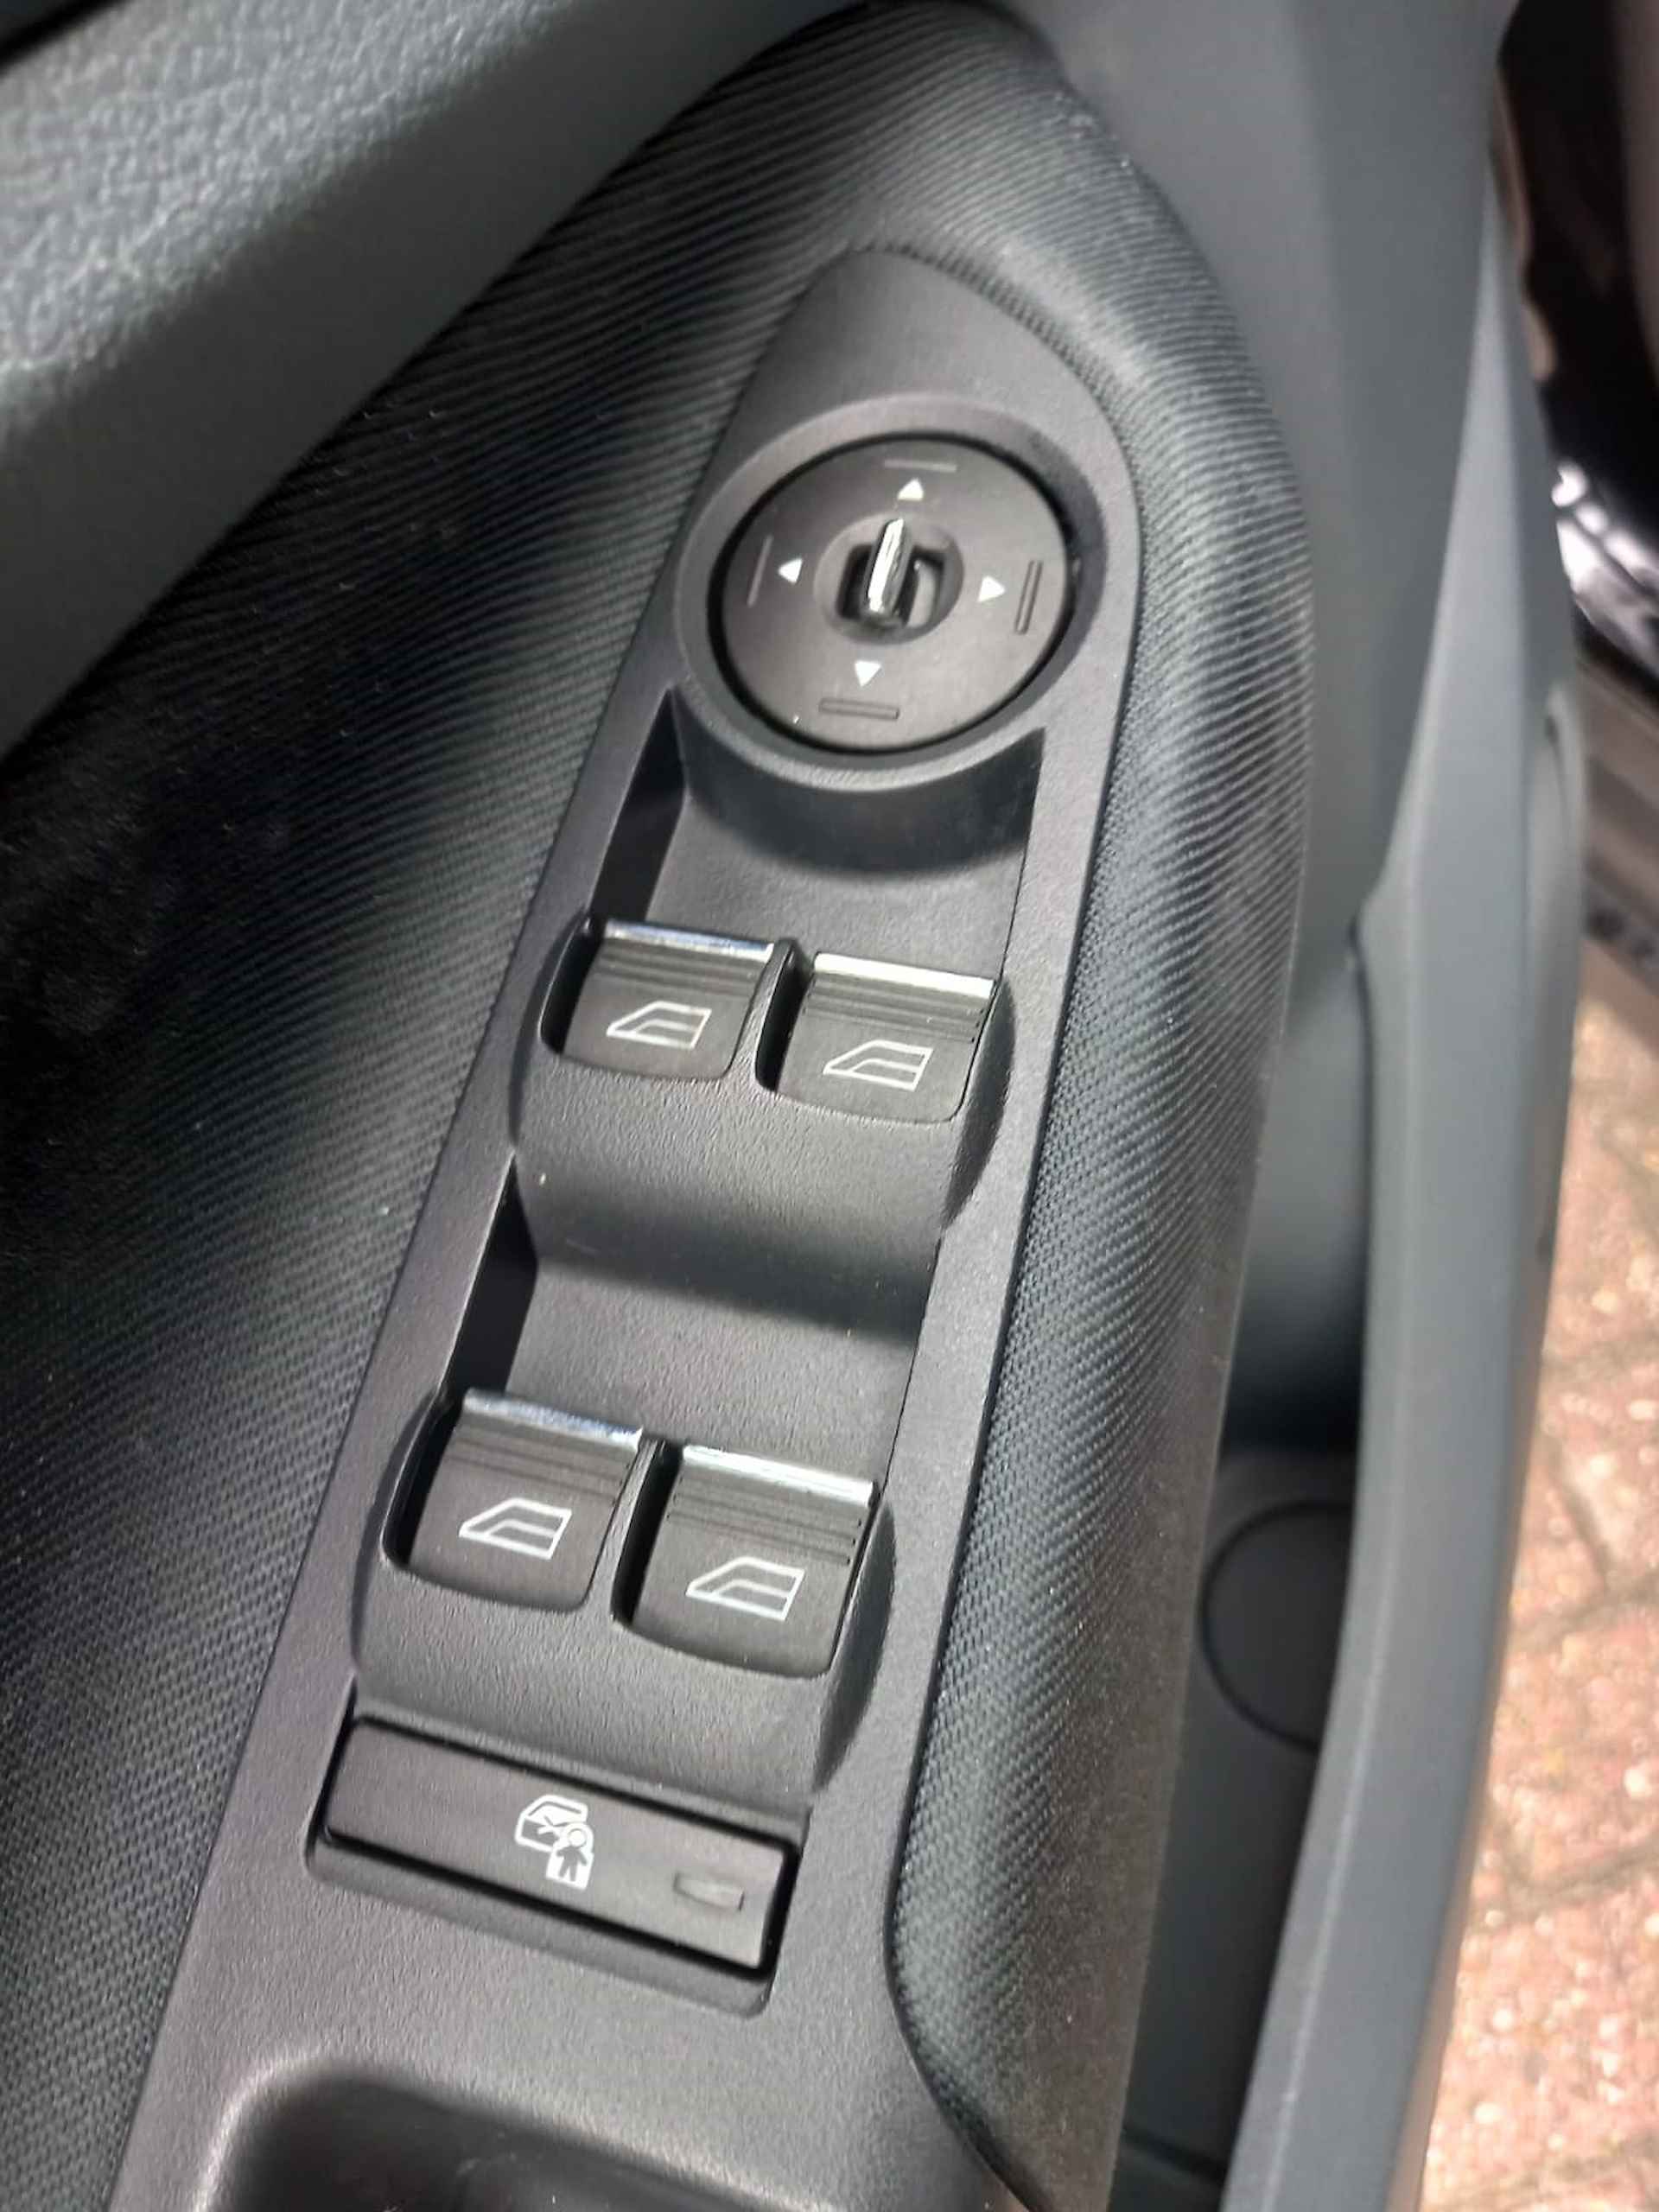 Ford Grand C-Max 1.0 7 Pers. Airco, Multimedia voorbereiding, Bluetooth telefoonvoorbereiding, Stoelverwarming, Voorruit verwarmd, Parkeersensore , Elektrische ramen voor en achter, Licht metalen velgen, Centrale vergrendeling met afstandsbediening, Nette auto inclusief BOVAG garantie - 22/29